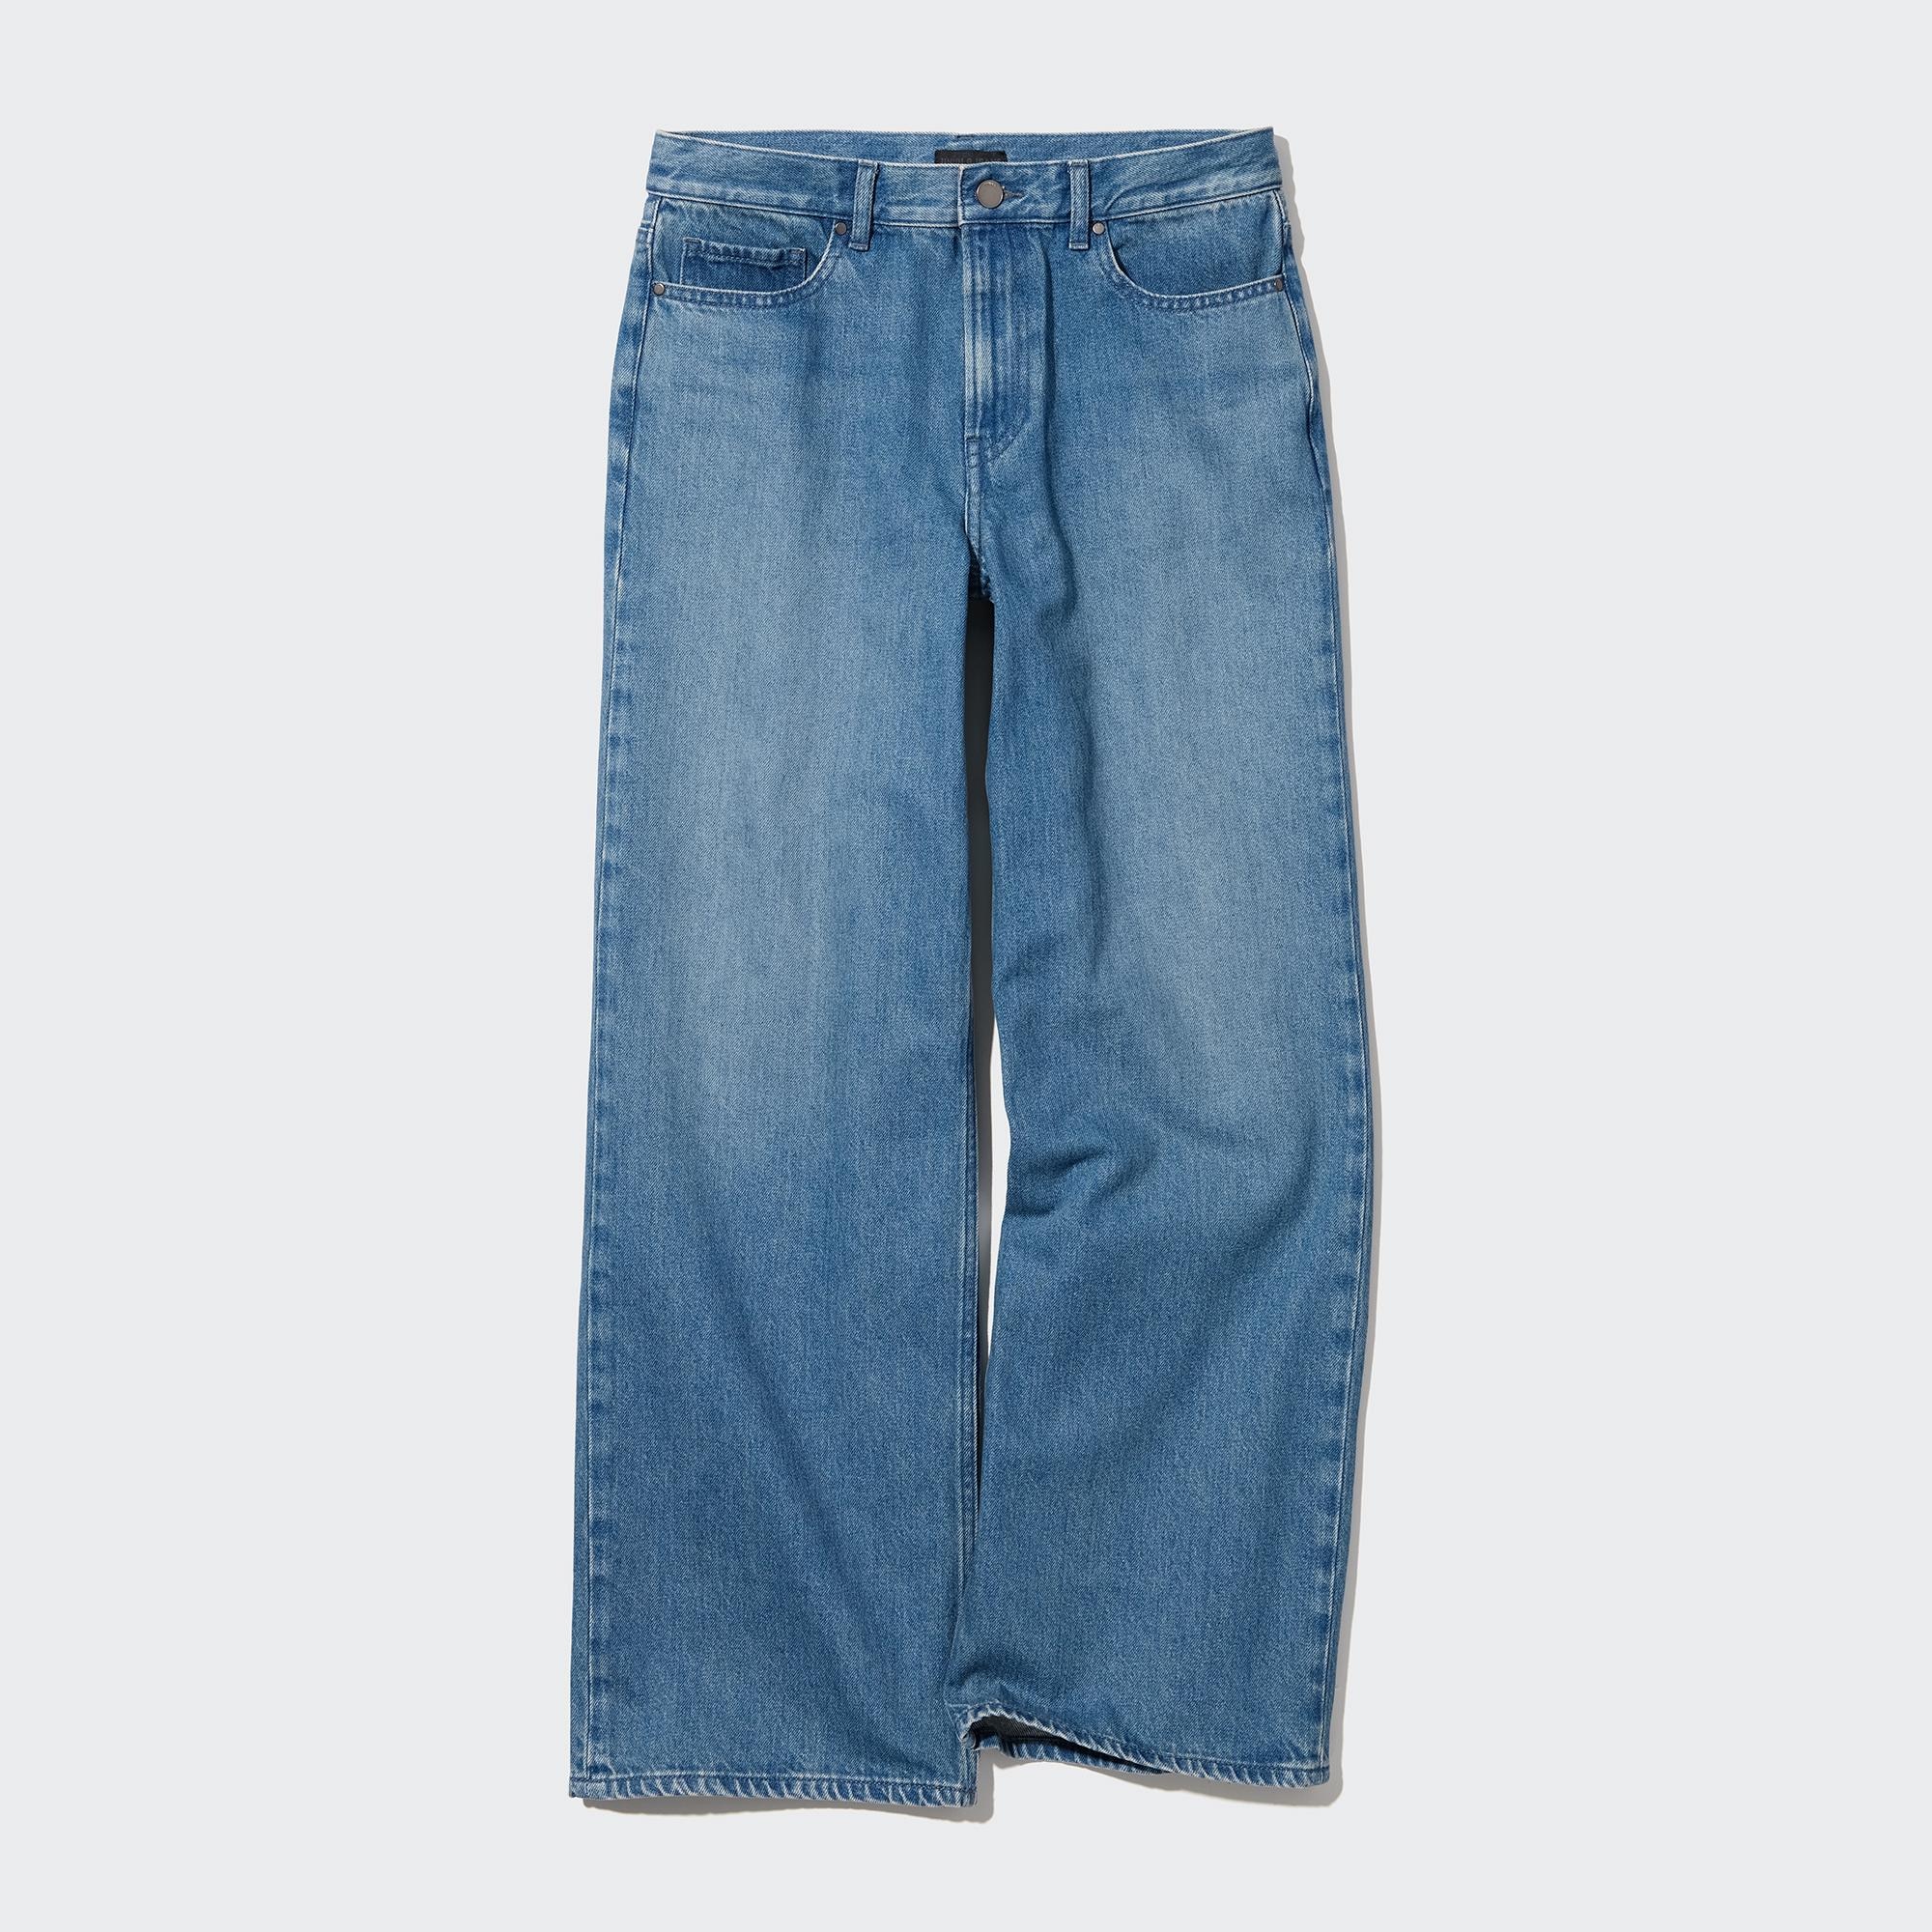 Jeans 100 % coton - Pantalon Femme 